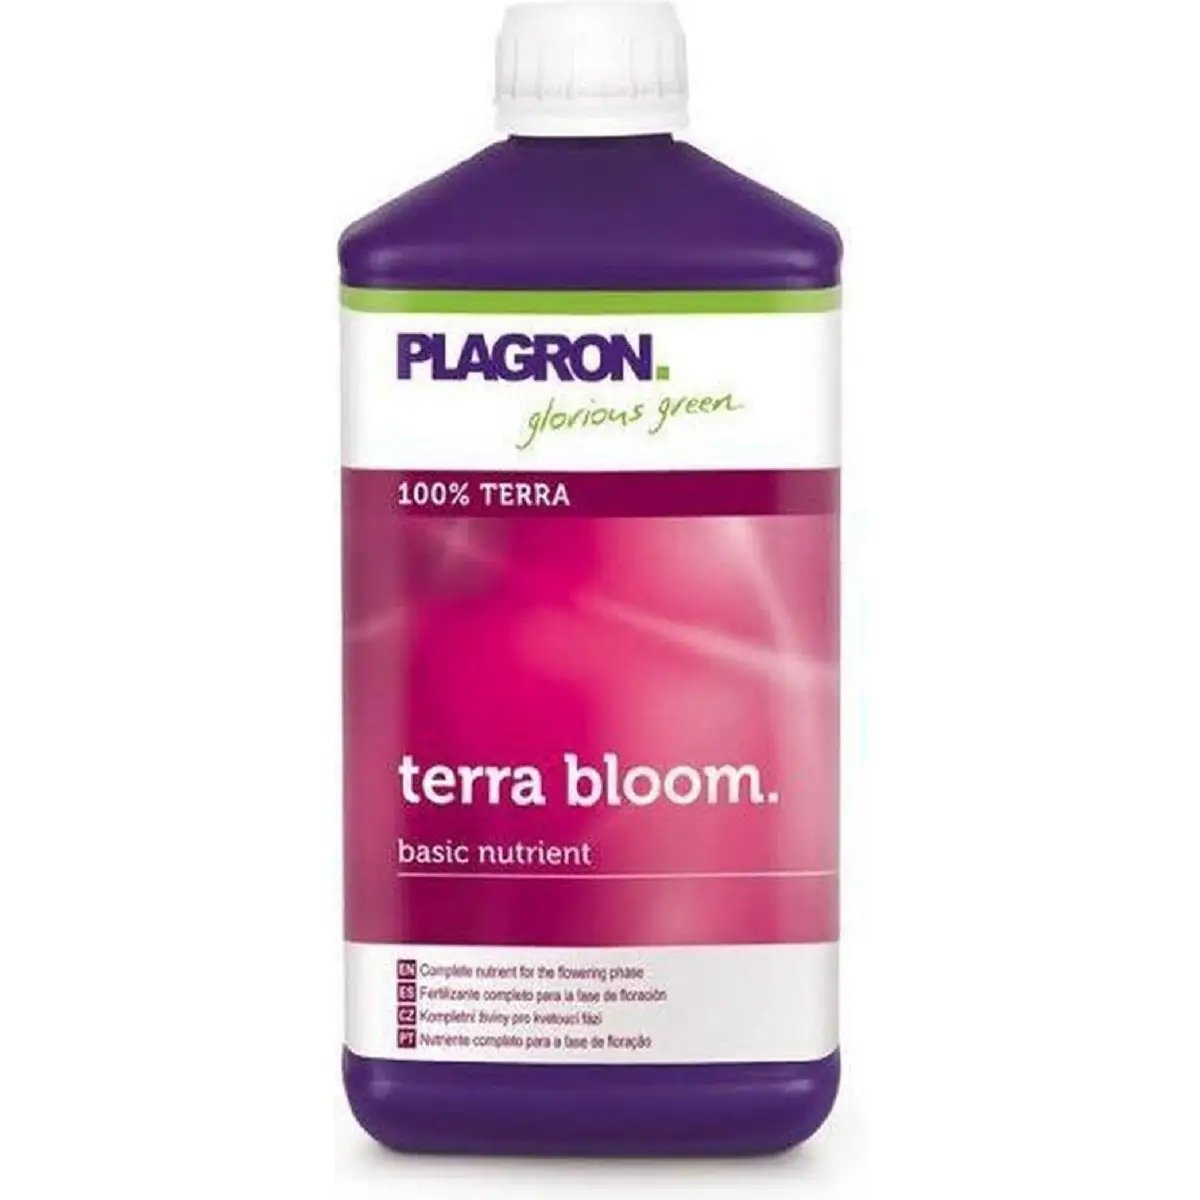 Plagron Terra Bloom 1 Litre